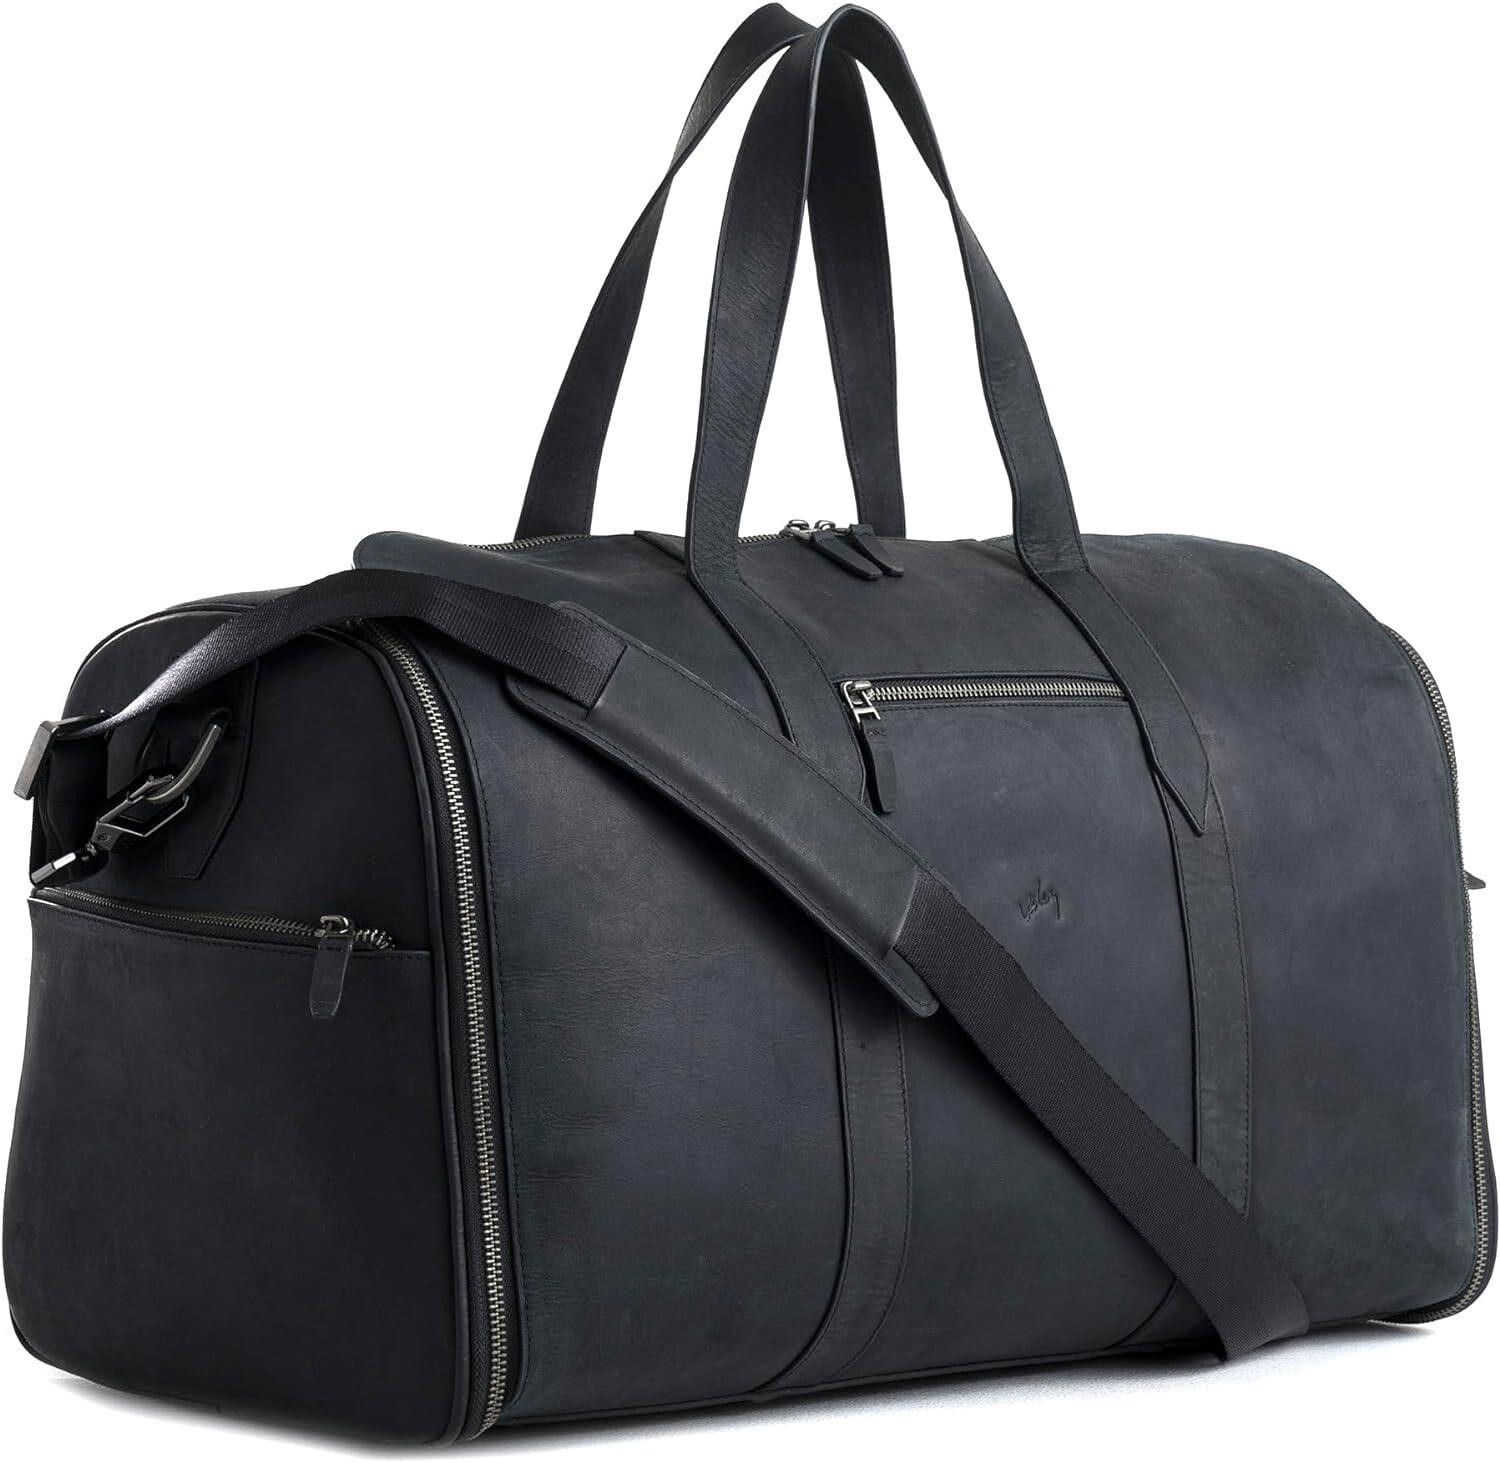 VELEZ Black Leather Garment Bag for Men